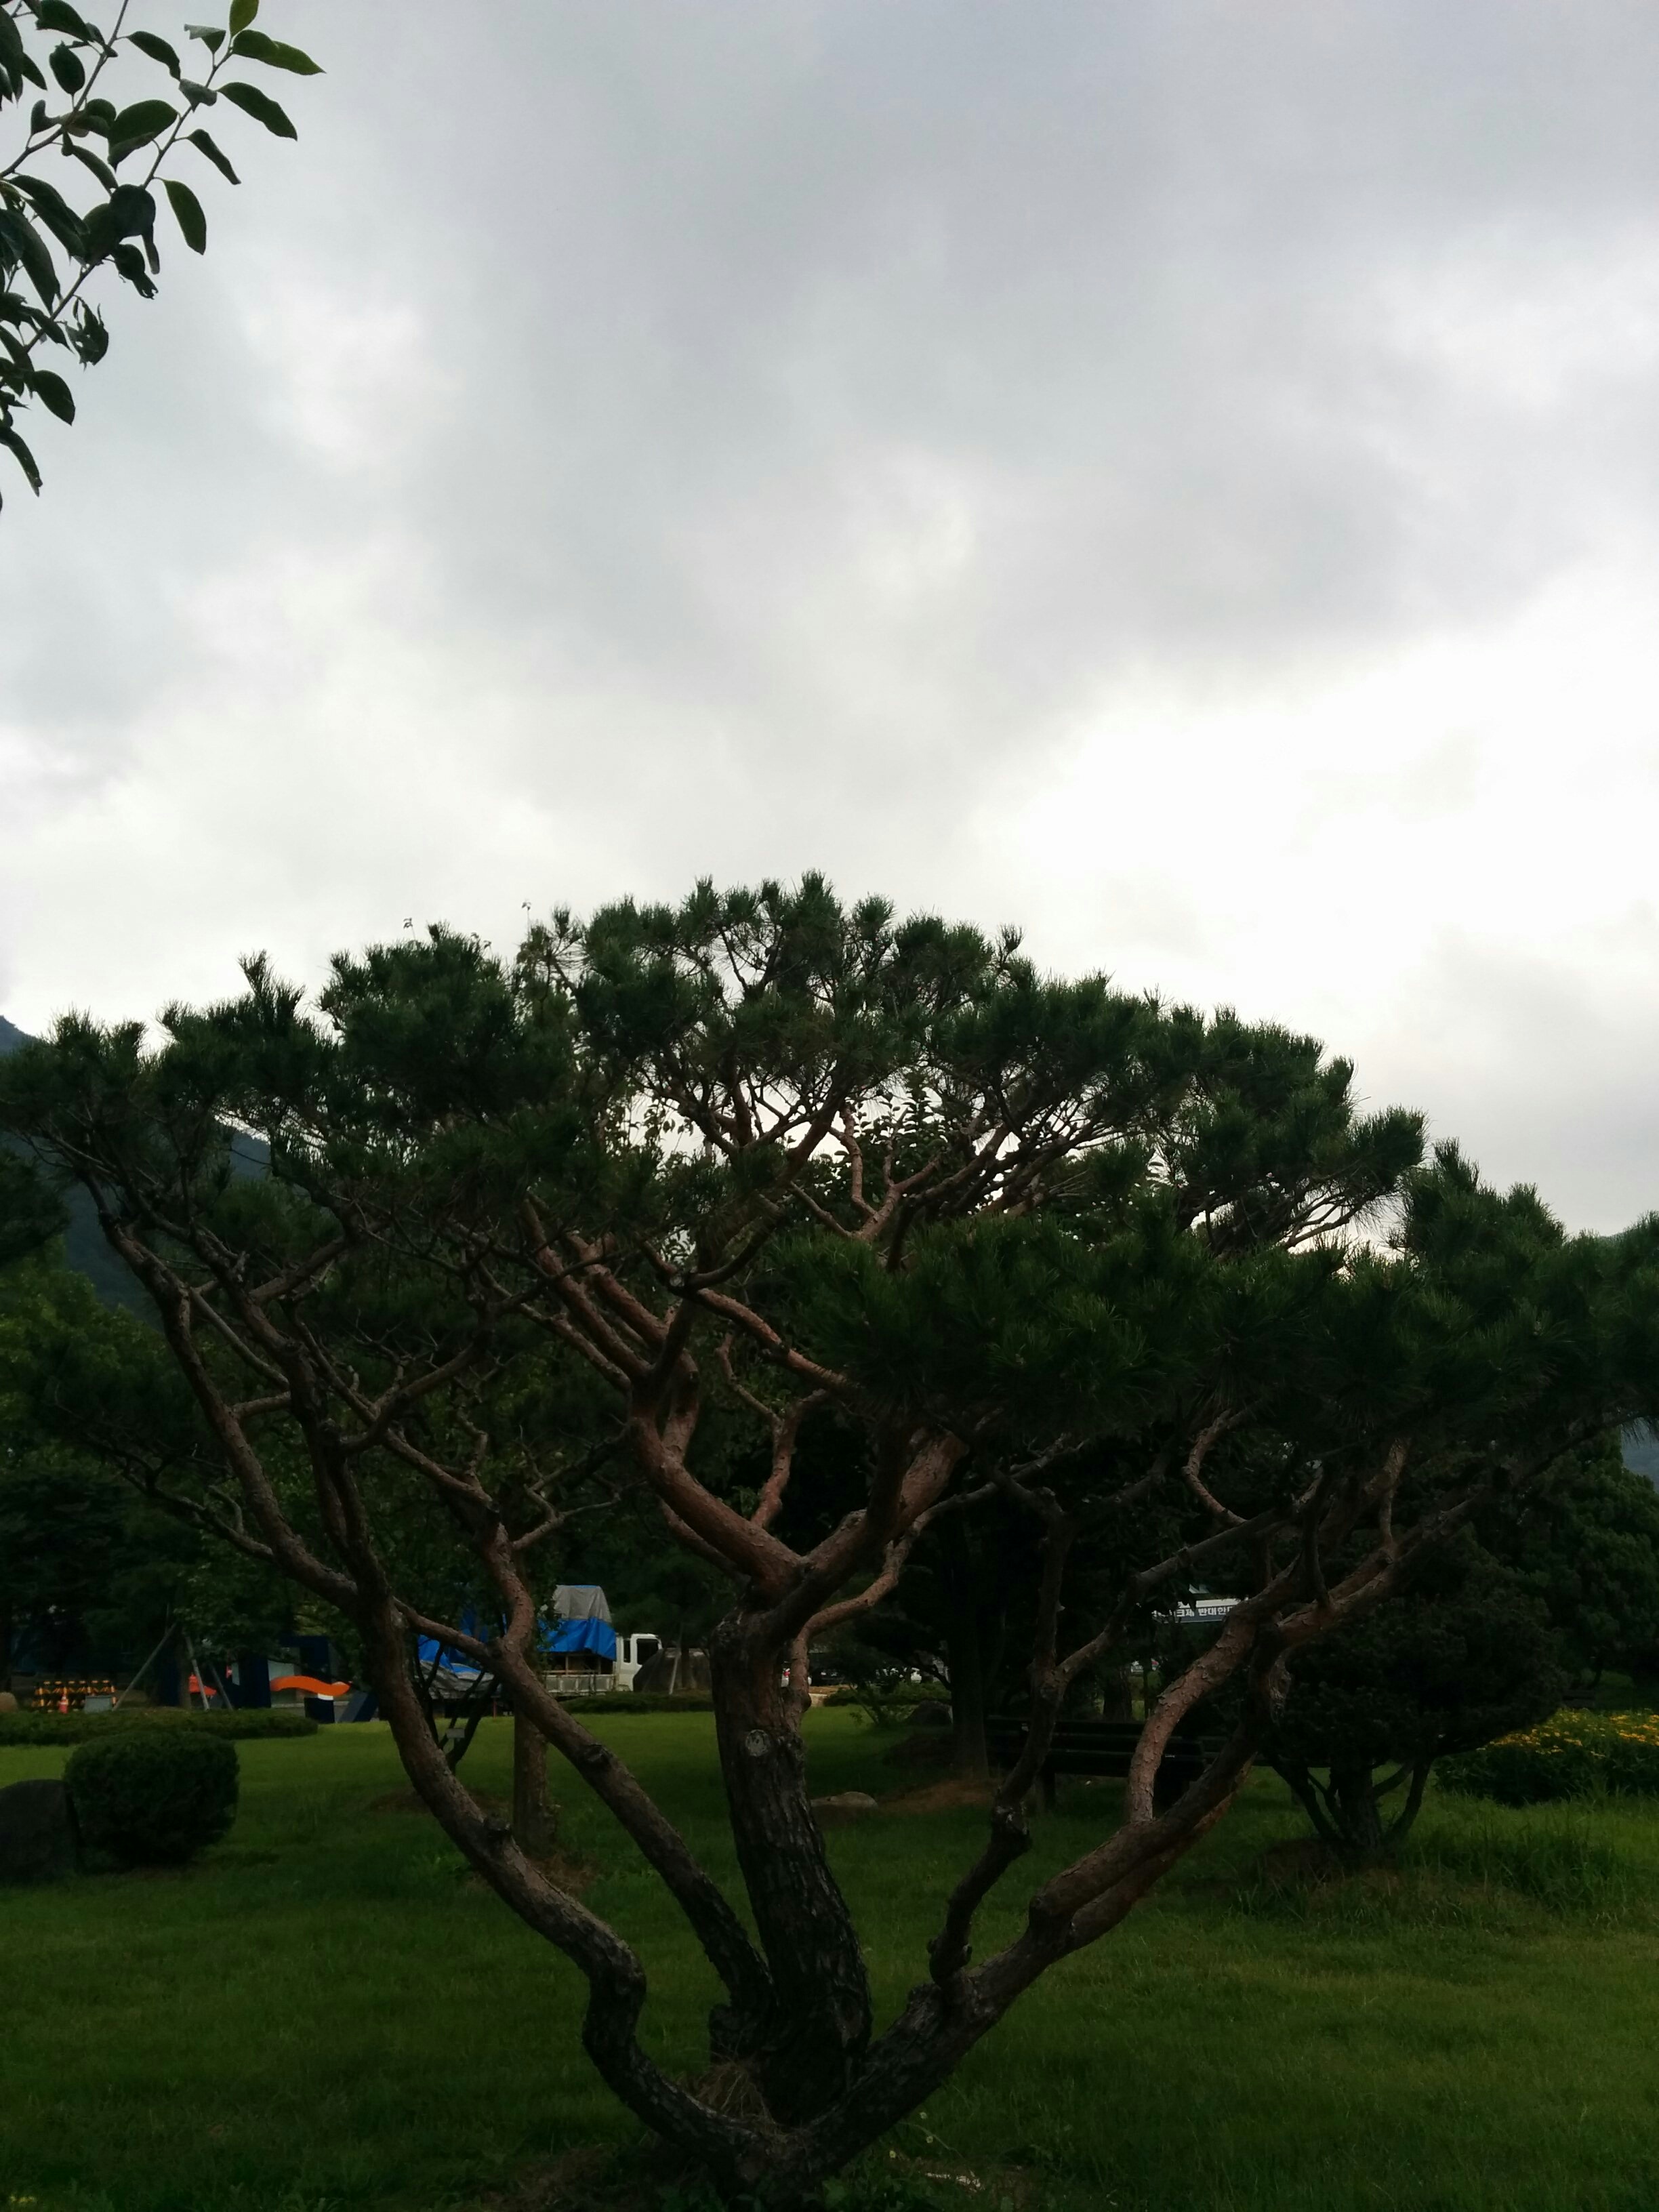 IMG_20150902_095416.jpg 전기연구원의 분재 소나무 (HDR+사진, 일반사진 비교)